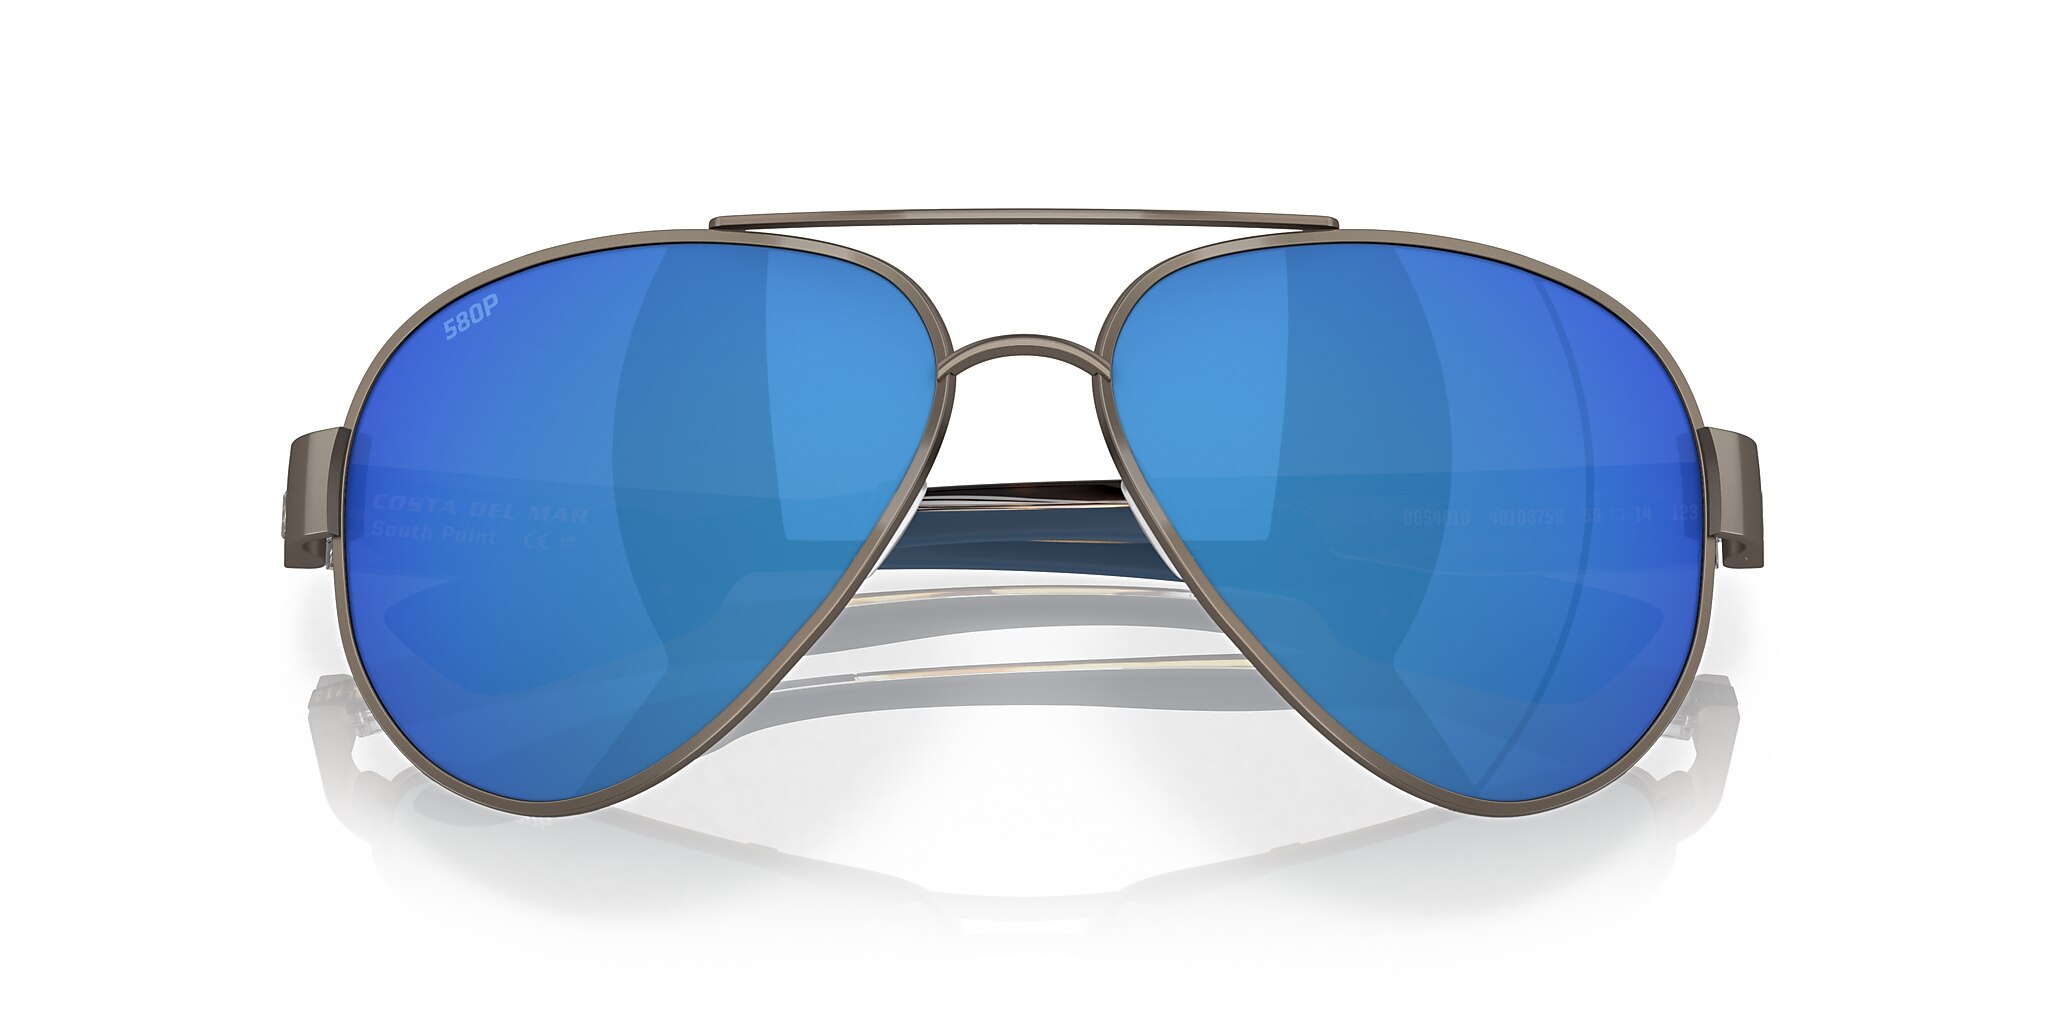 South Point Polarized Sunglasses in Blue Mirror | Costa Del Mar®